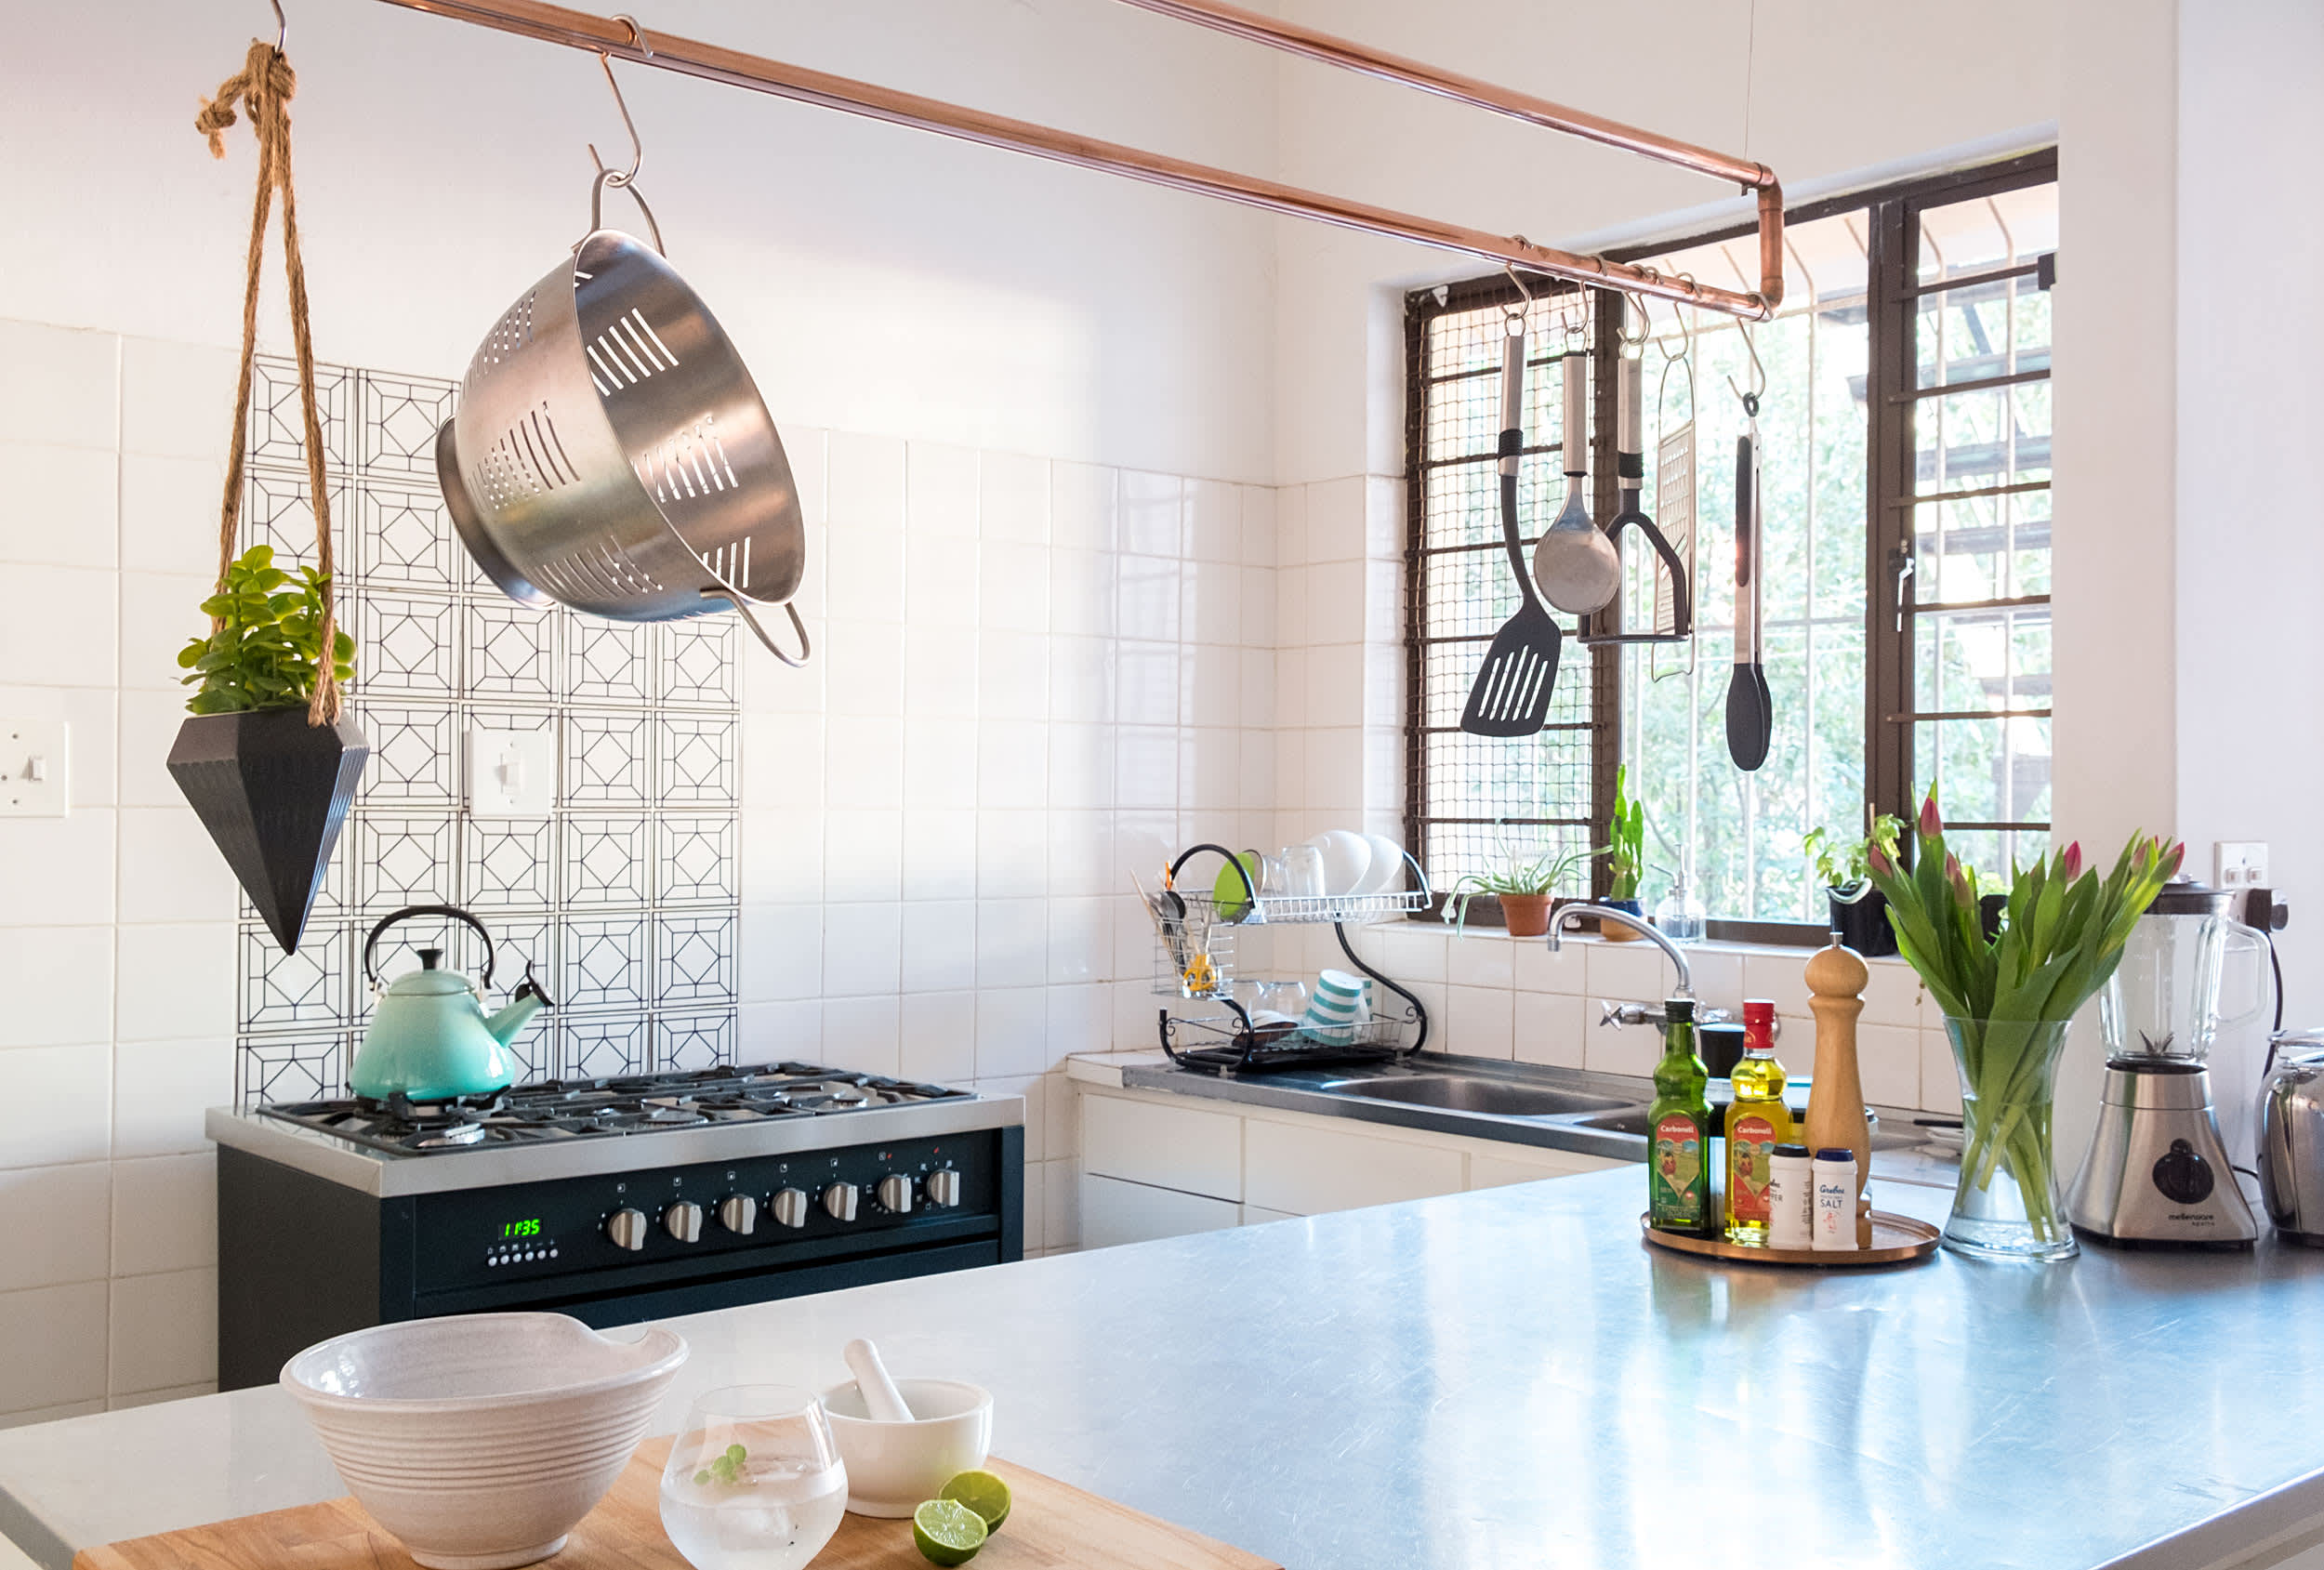 Building a Smart Kitchen: 7 Must-Have Smart Kitchen Appliances